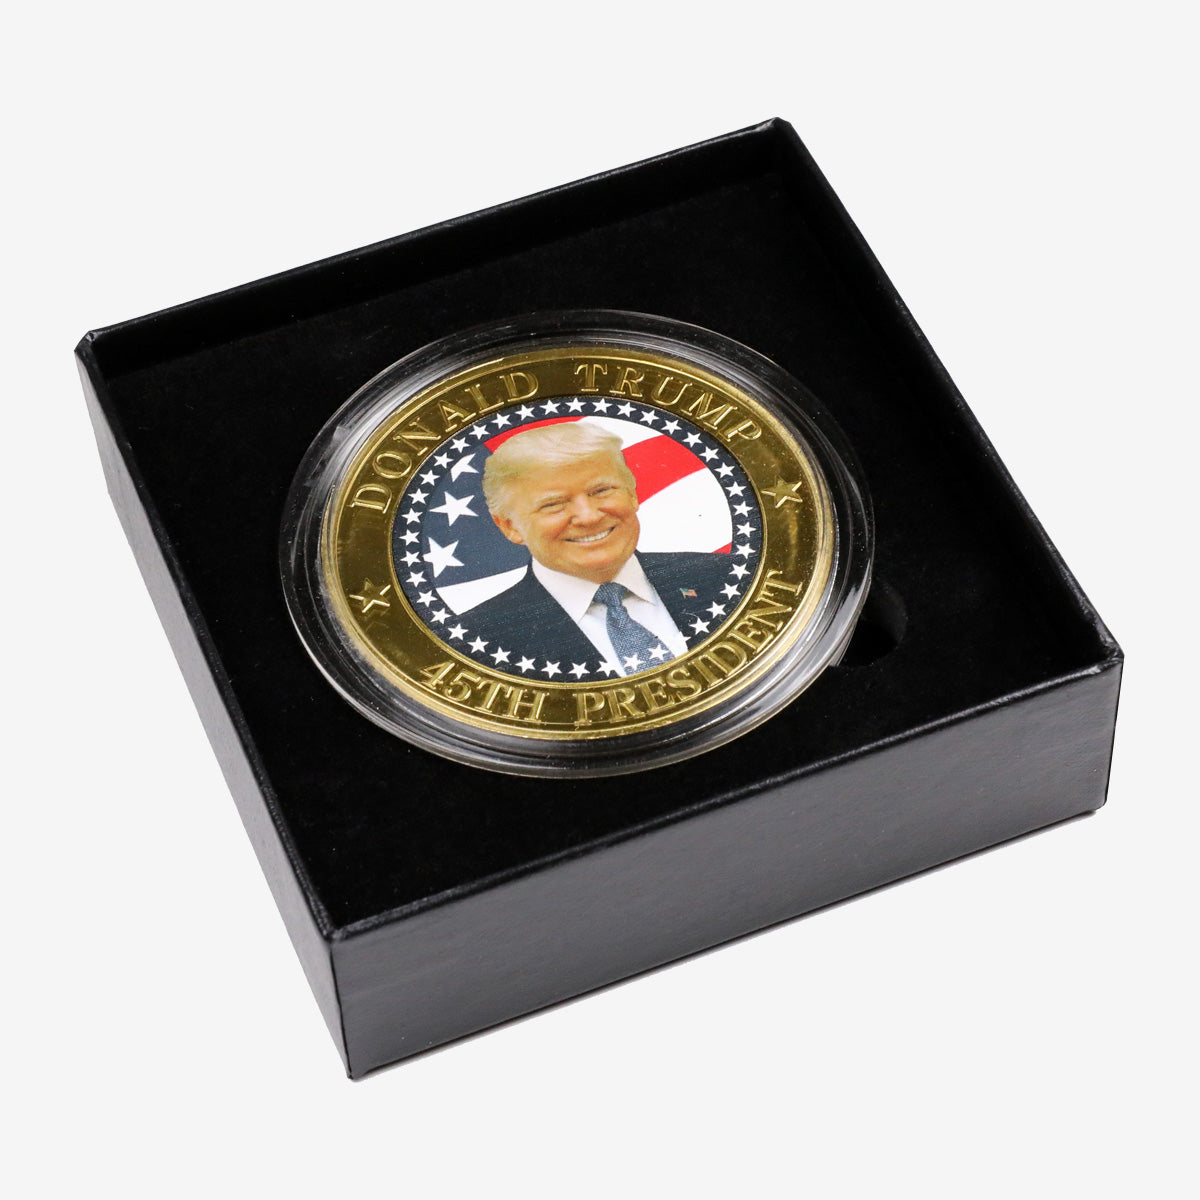 Donald Trump 45th President Colorized Commemorative Coin Box